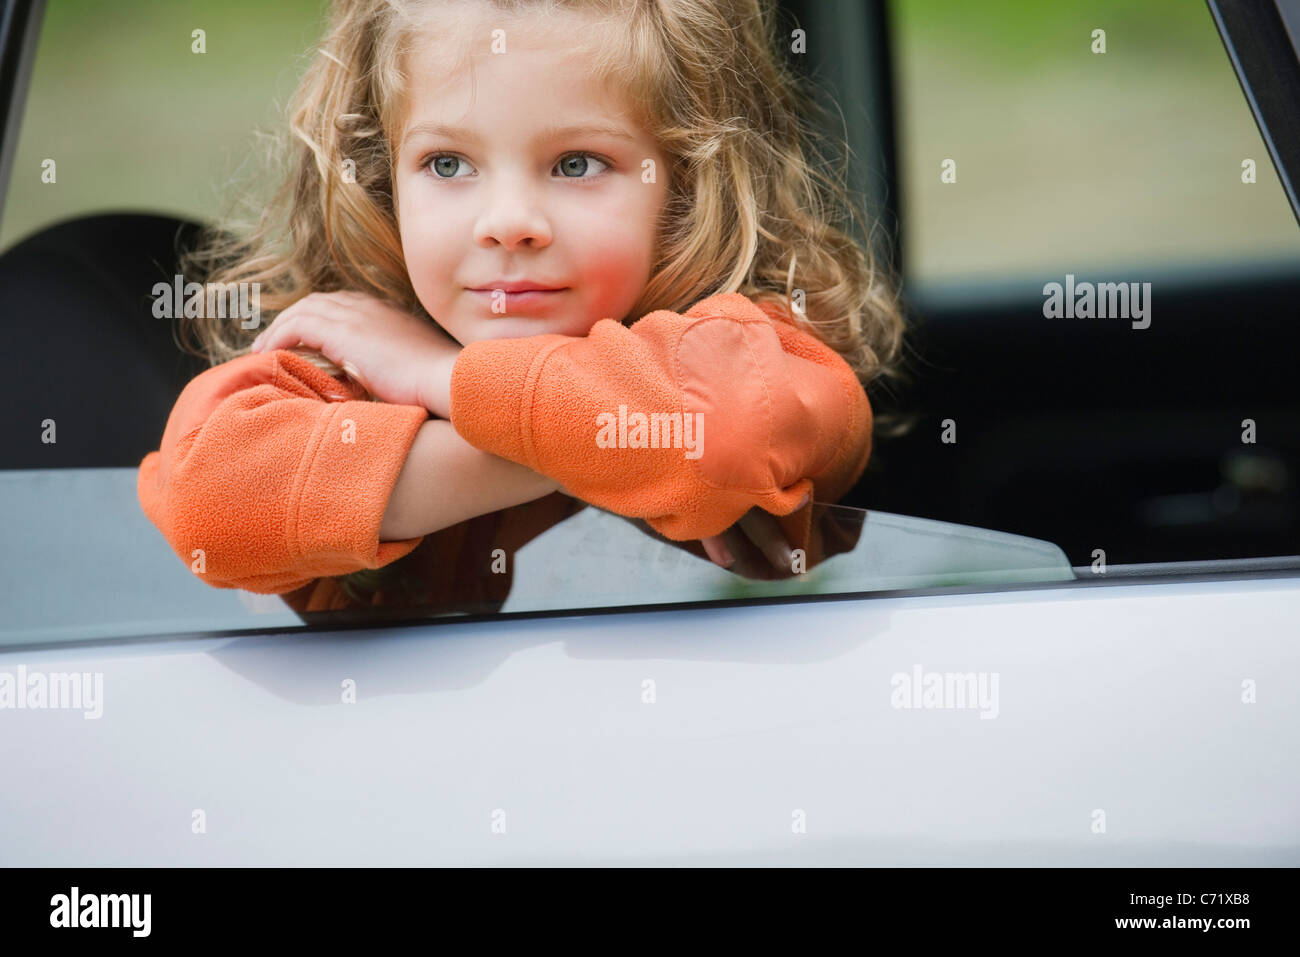 Mädchen auf der Suche aus Autofenster Stockfotografie - Alamy